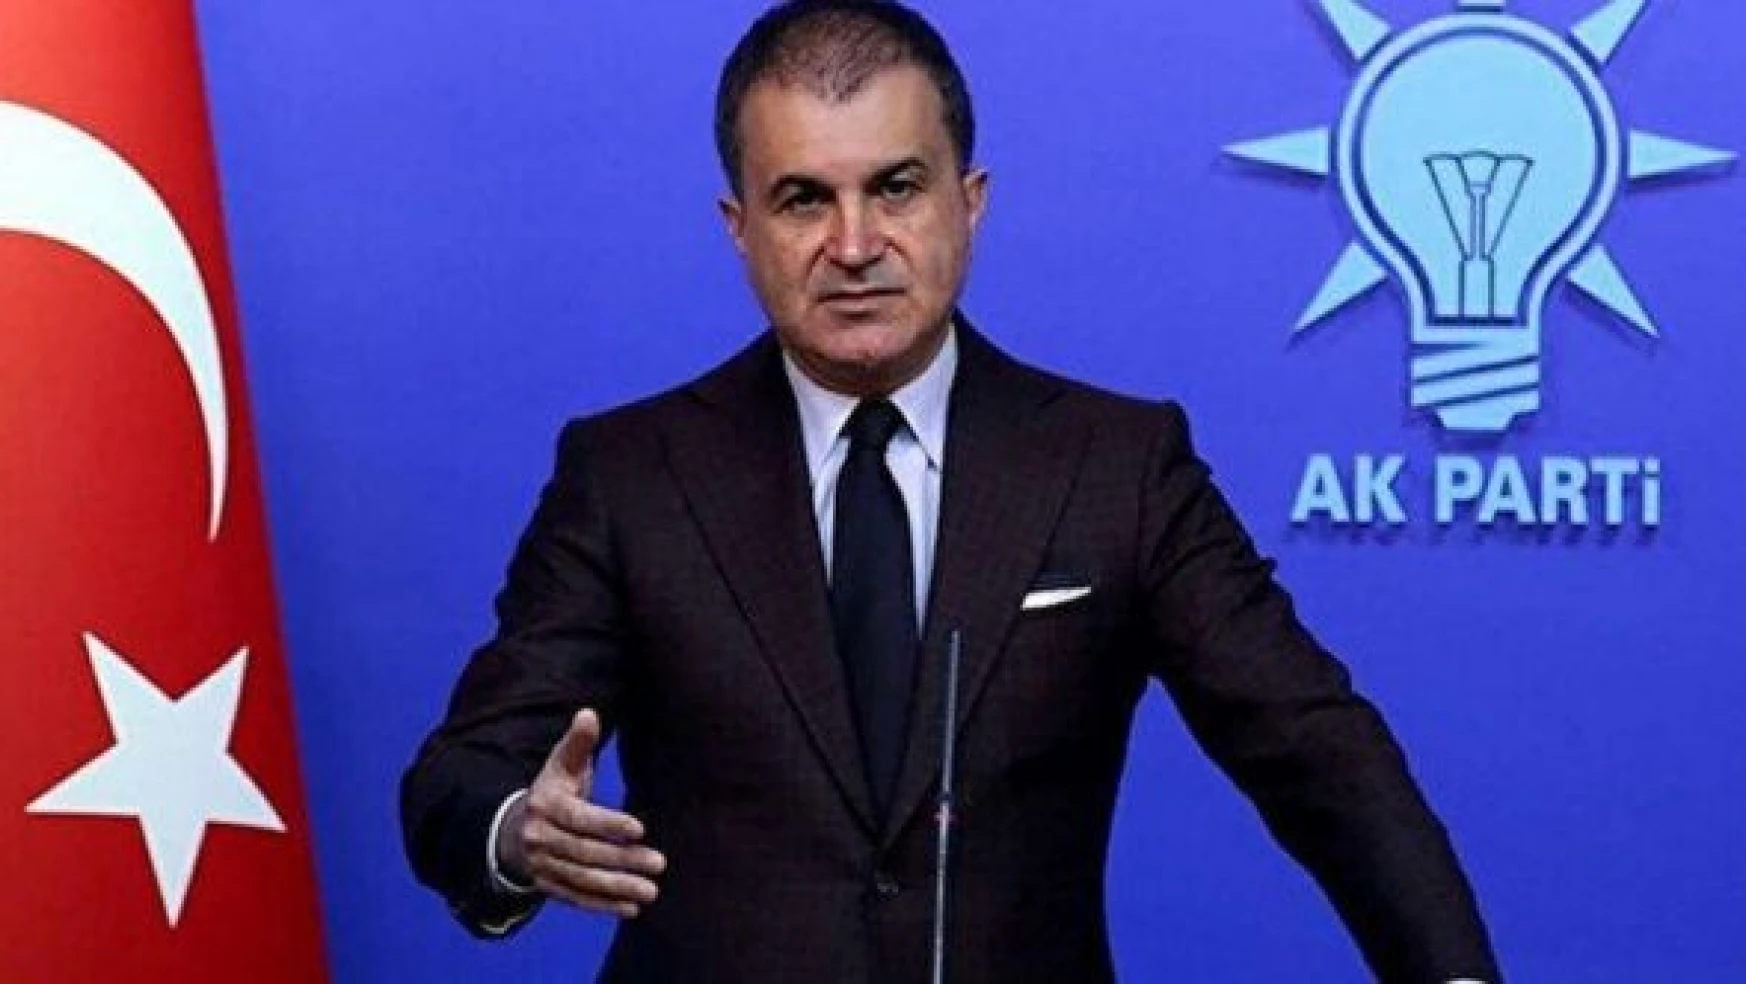 AK Parti Sözcüsü Ömer Çelik: "Çocukların istismarını lanetliyoruz"